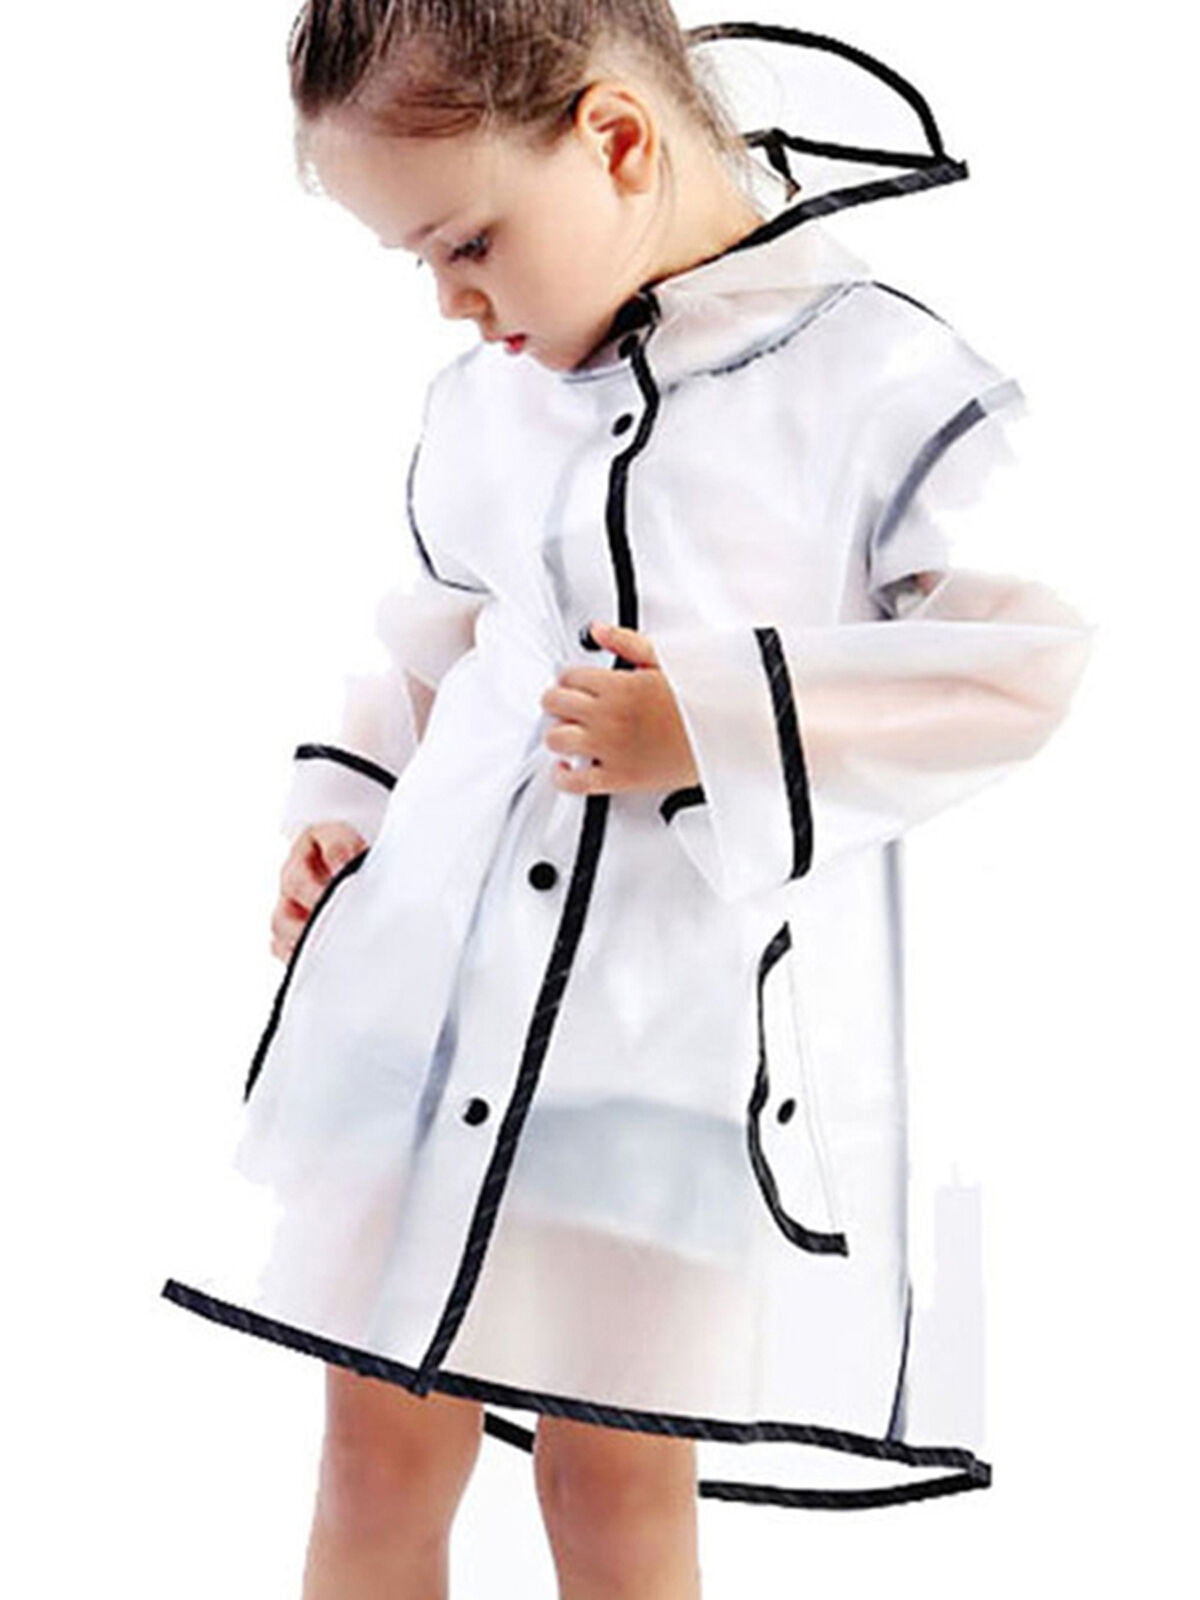 Yuncai Girls Printed Long Sleeves Hooded Raincoat Waterproof Windproof Rain Jacket